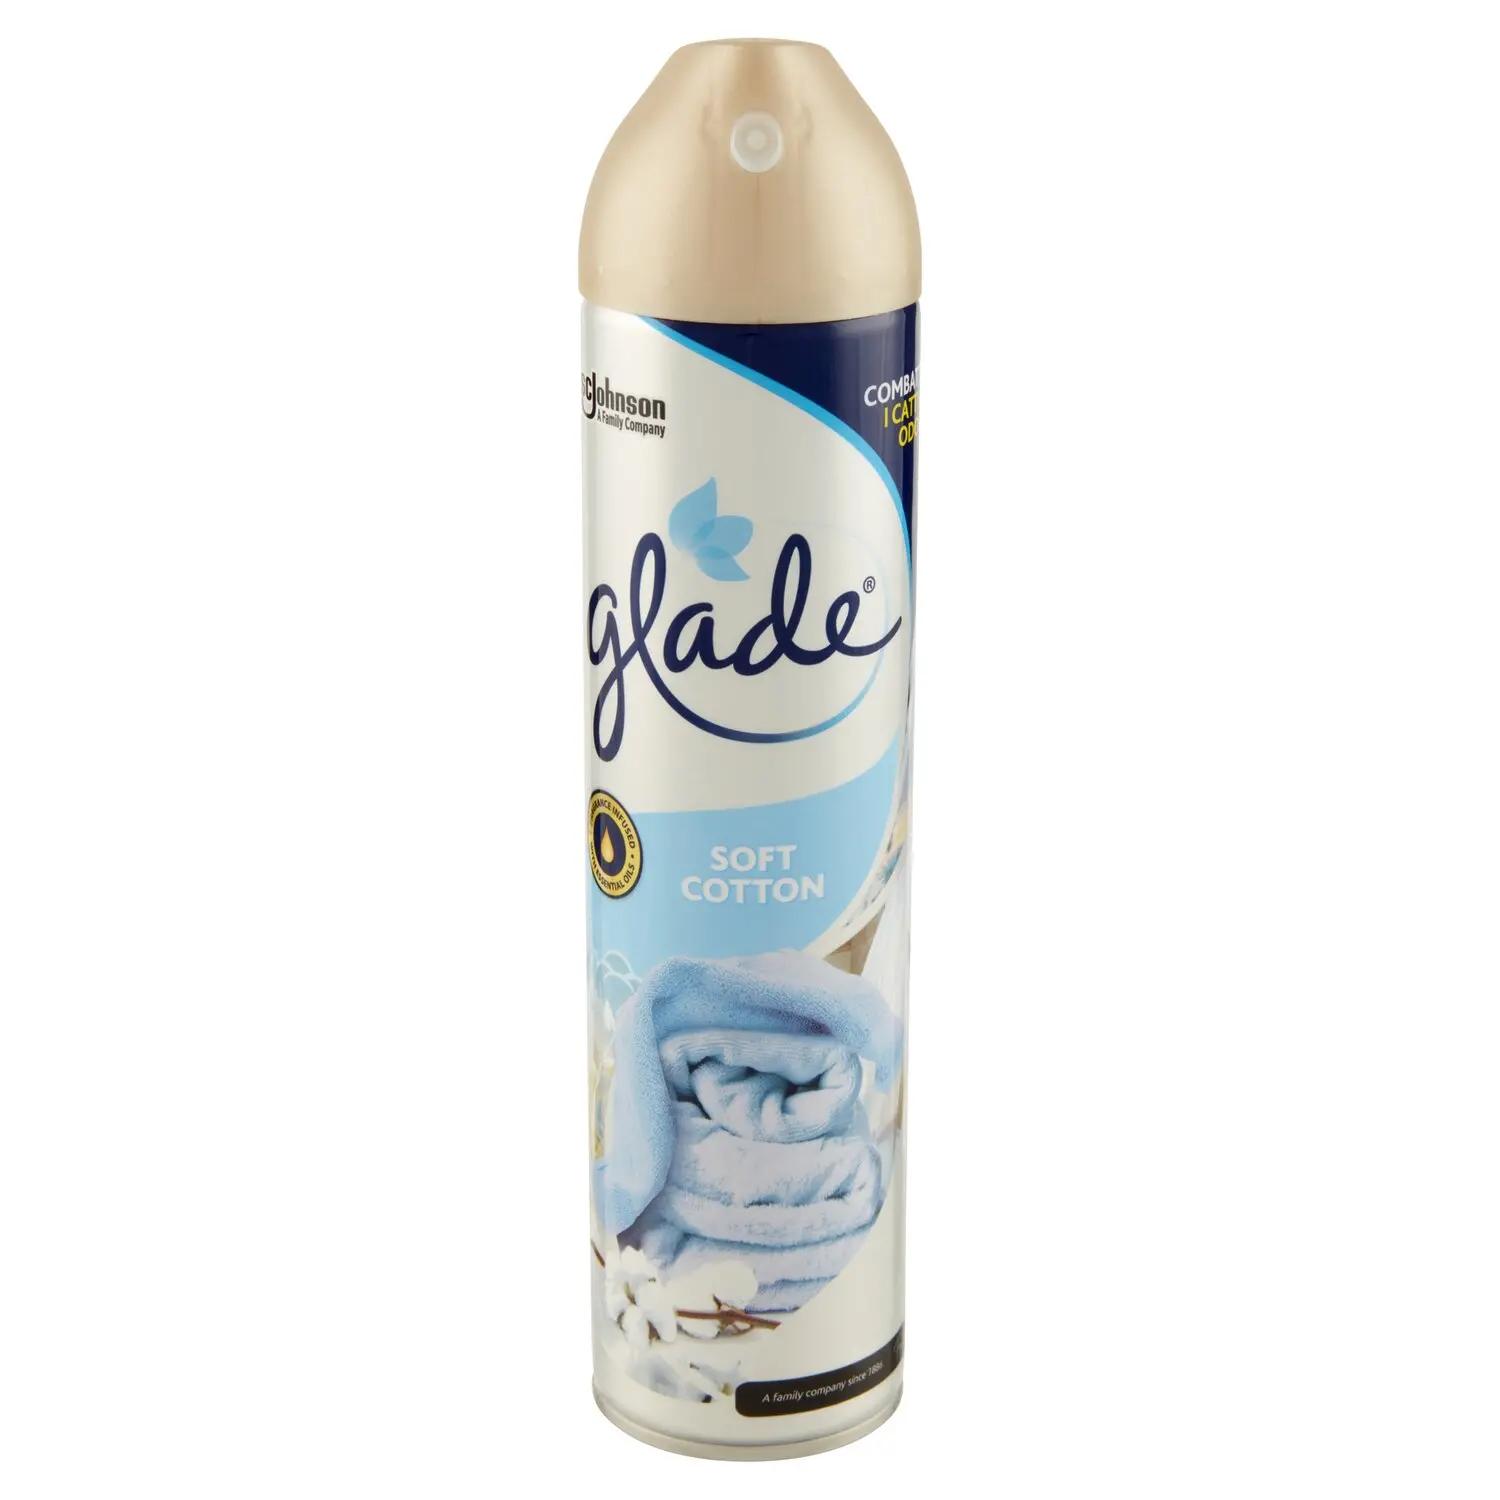 Glade Spray Silver, Profumatore per Ambienti, Fragranza Soft